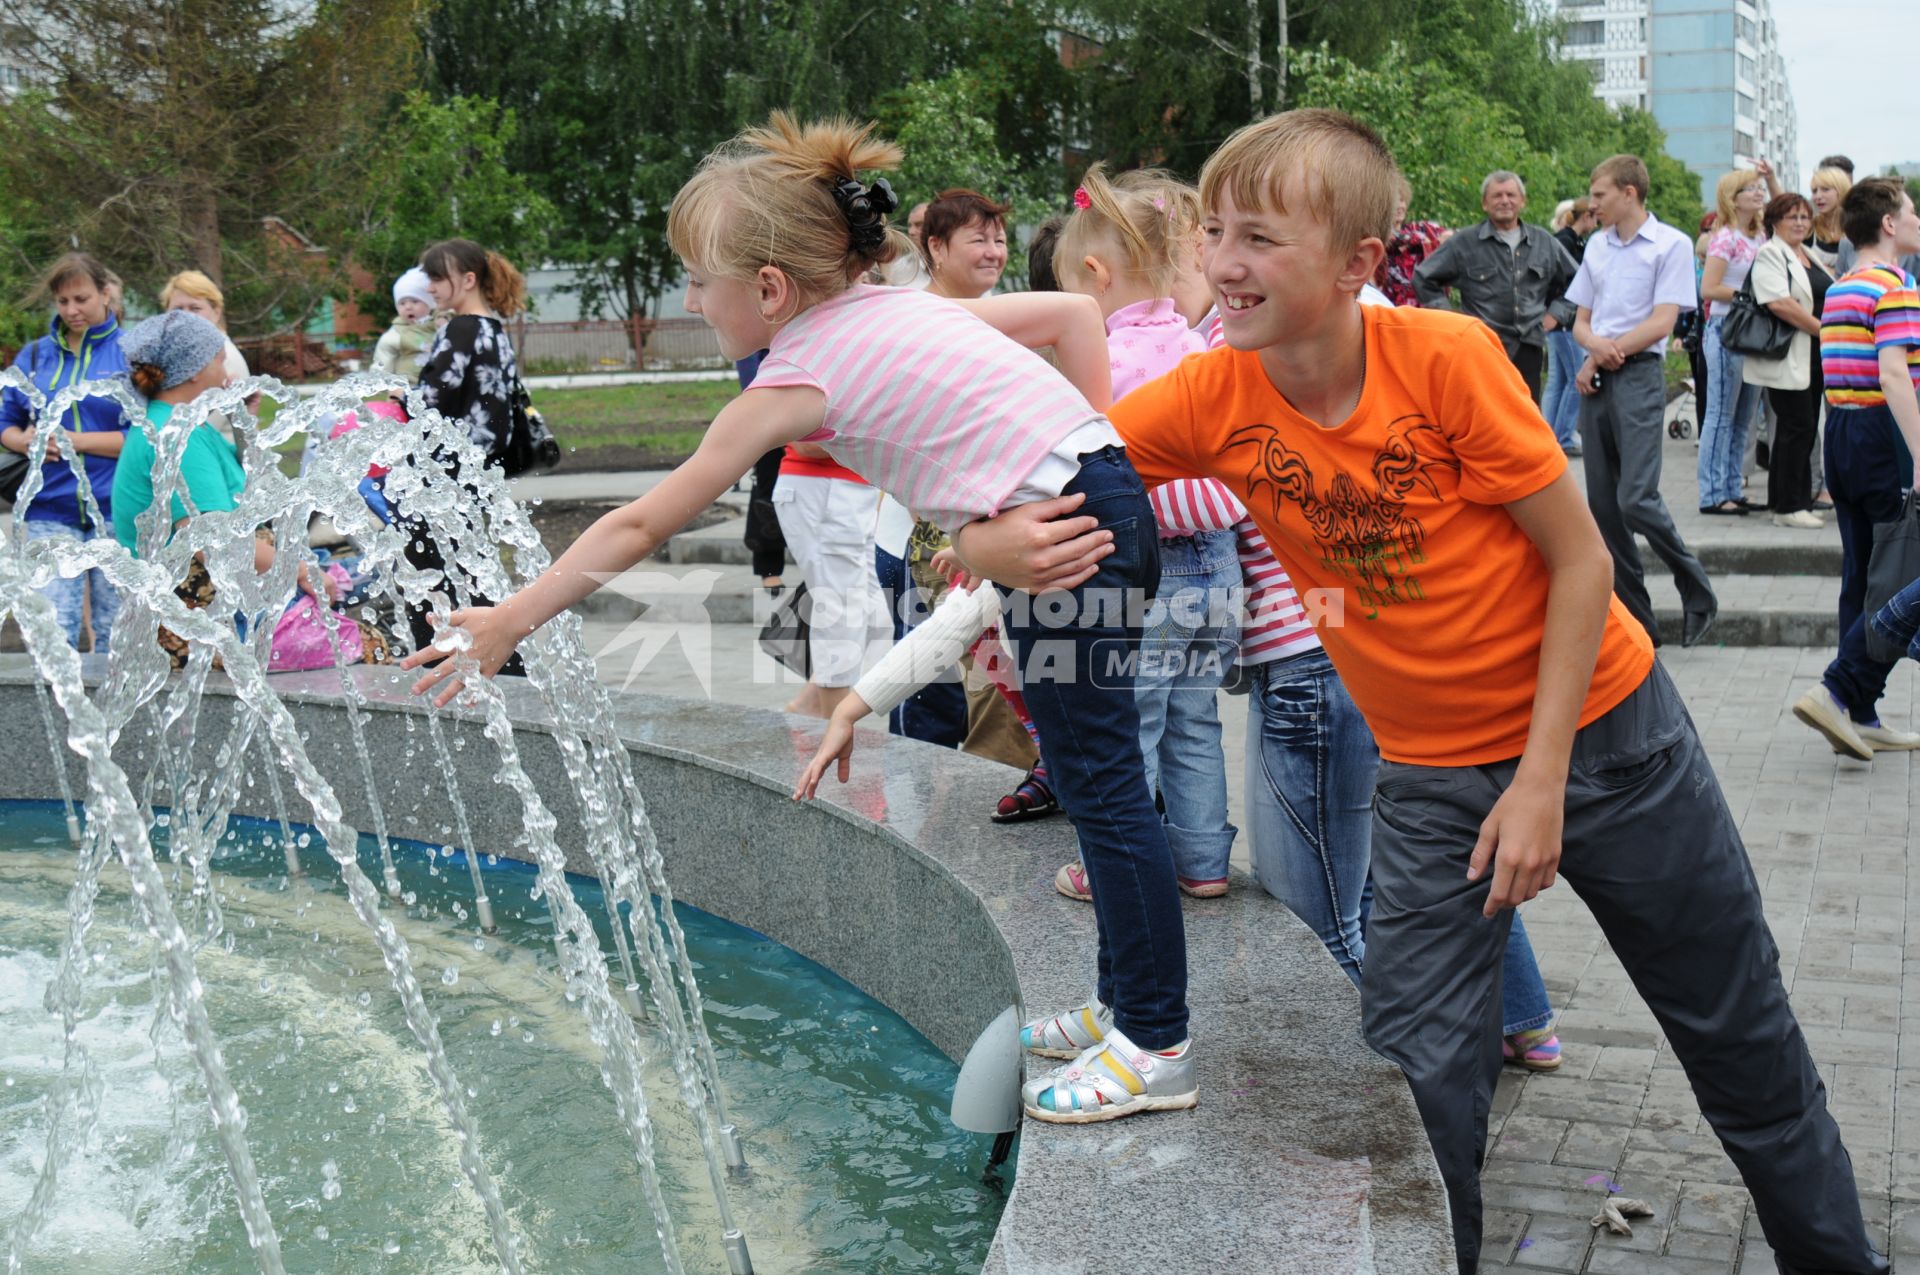 Брат придерживая рукой сестру не дает ей упасть в фонтан. Сестра моет руки в фонтане. 6 июля 2011 года.  Новосибирск.